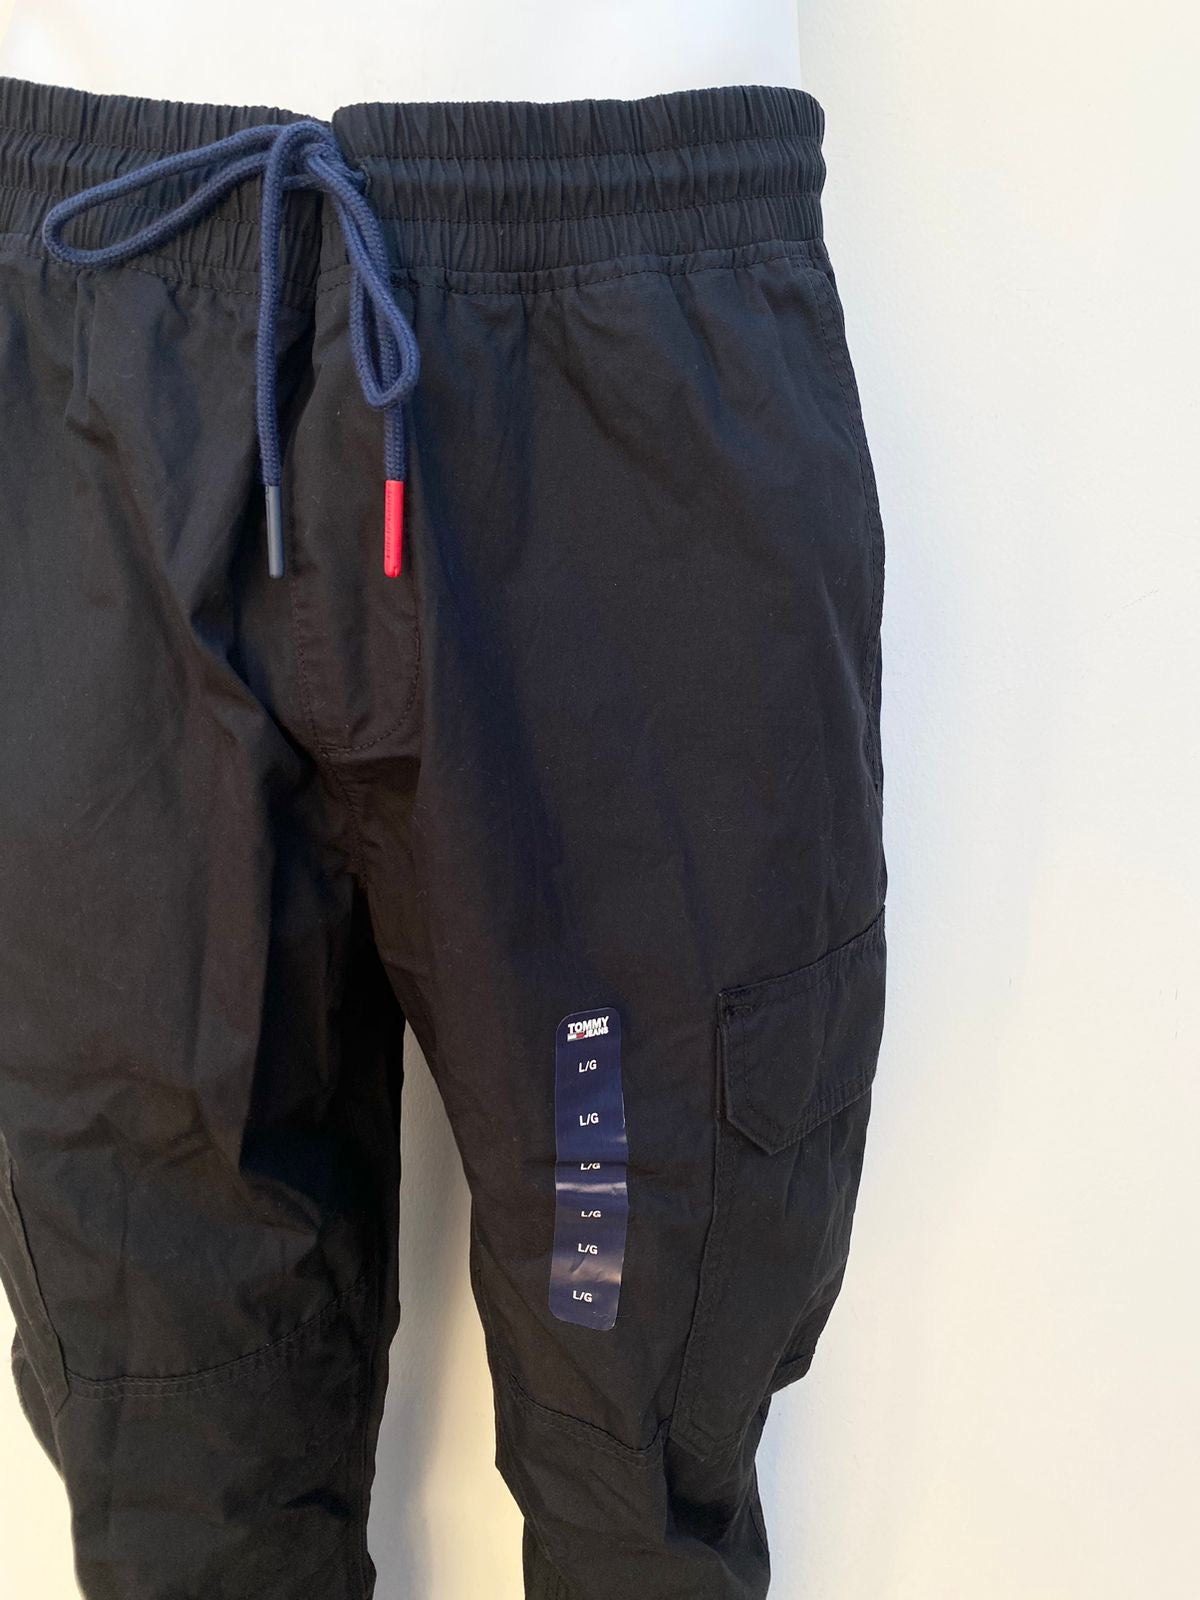 Jogger pantalón Tommy Hilfiger original negro con lazos en azul marino.